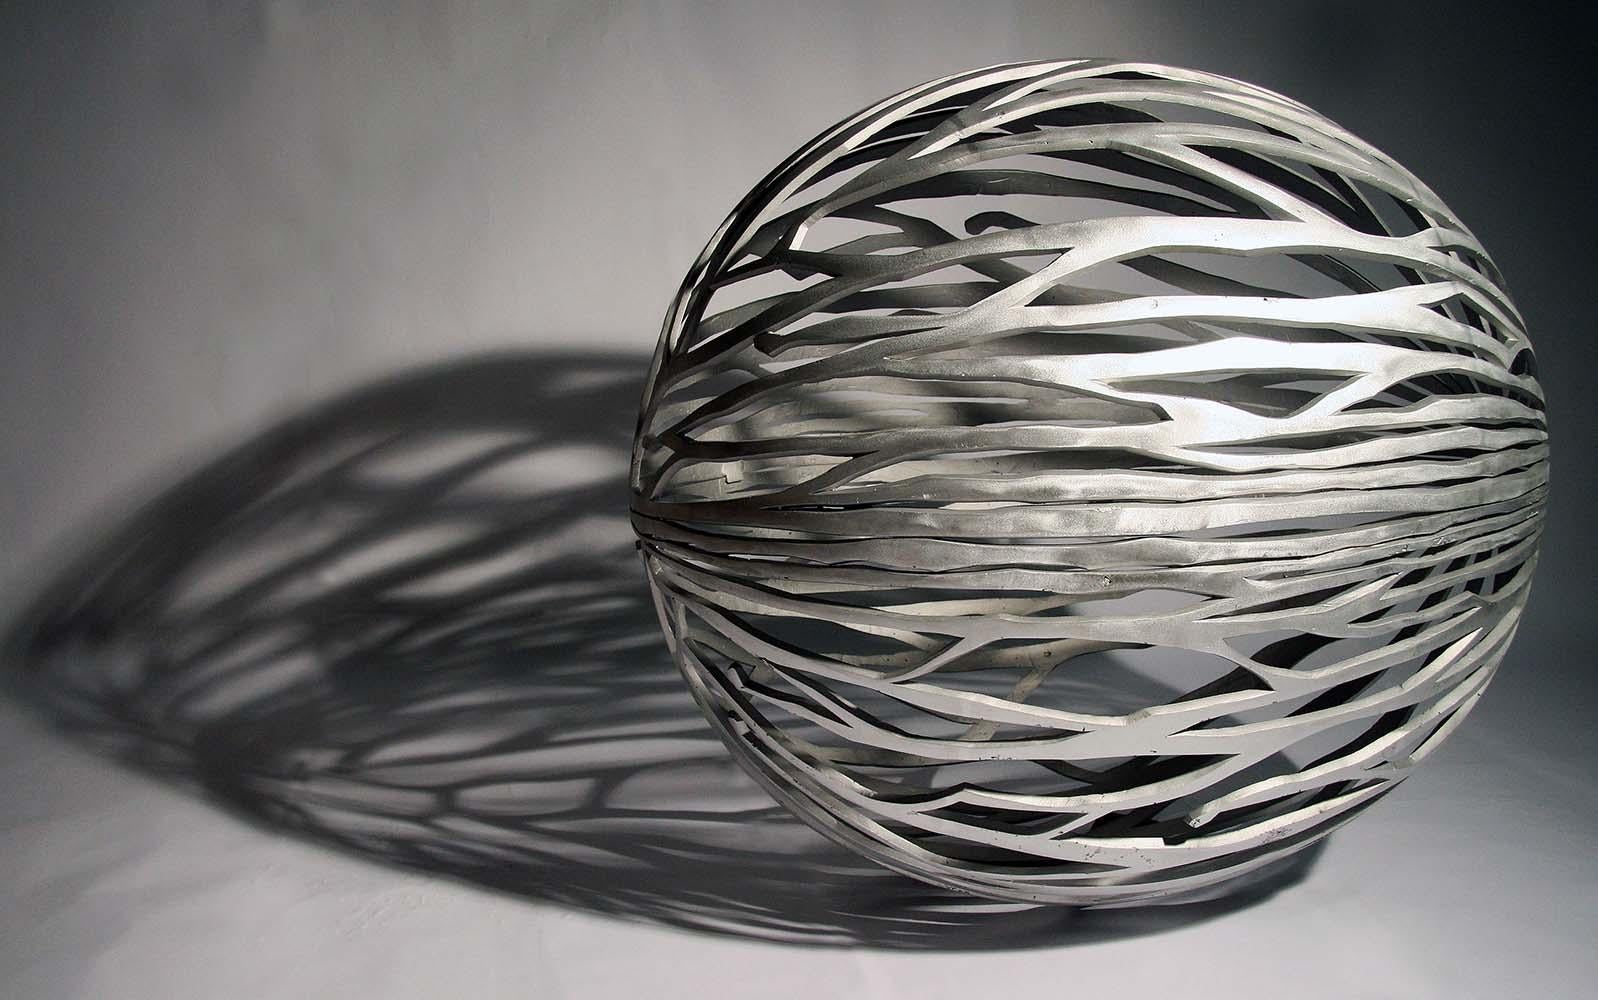 Urbanut ist eine Aluminiumskulptur des zeitgenössischen tschechischen Bildhauers Ondřej Oliva mit den Maßen 105 × 100 × 80 cm (41,3 × 39,4 × 31,5 in).
Dieses Kunstwerk stammt aus einer limitierten Auflage von 6 Exemplaren, jede Auflage wird mit